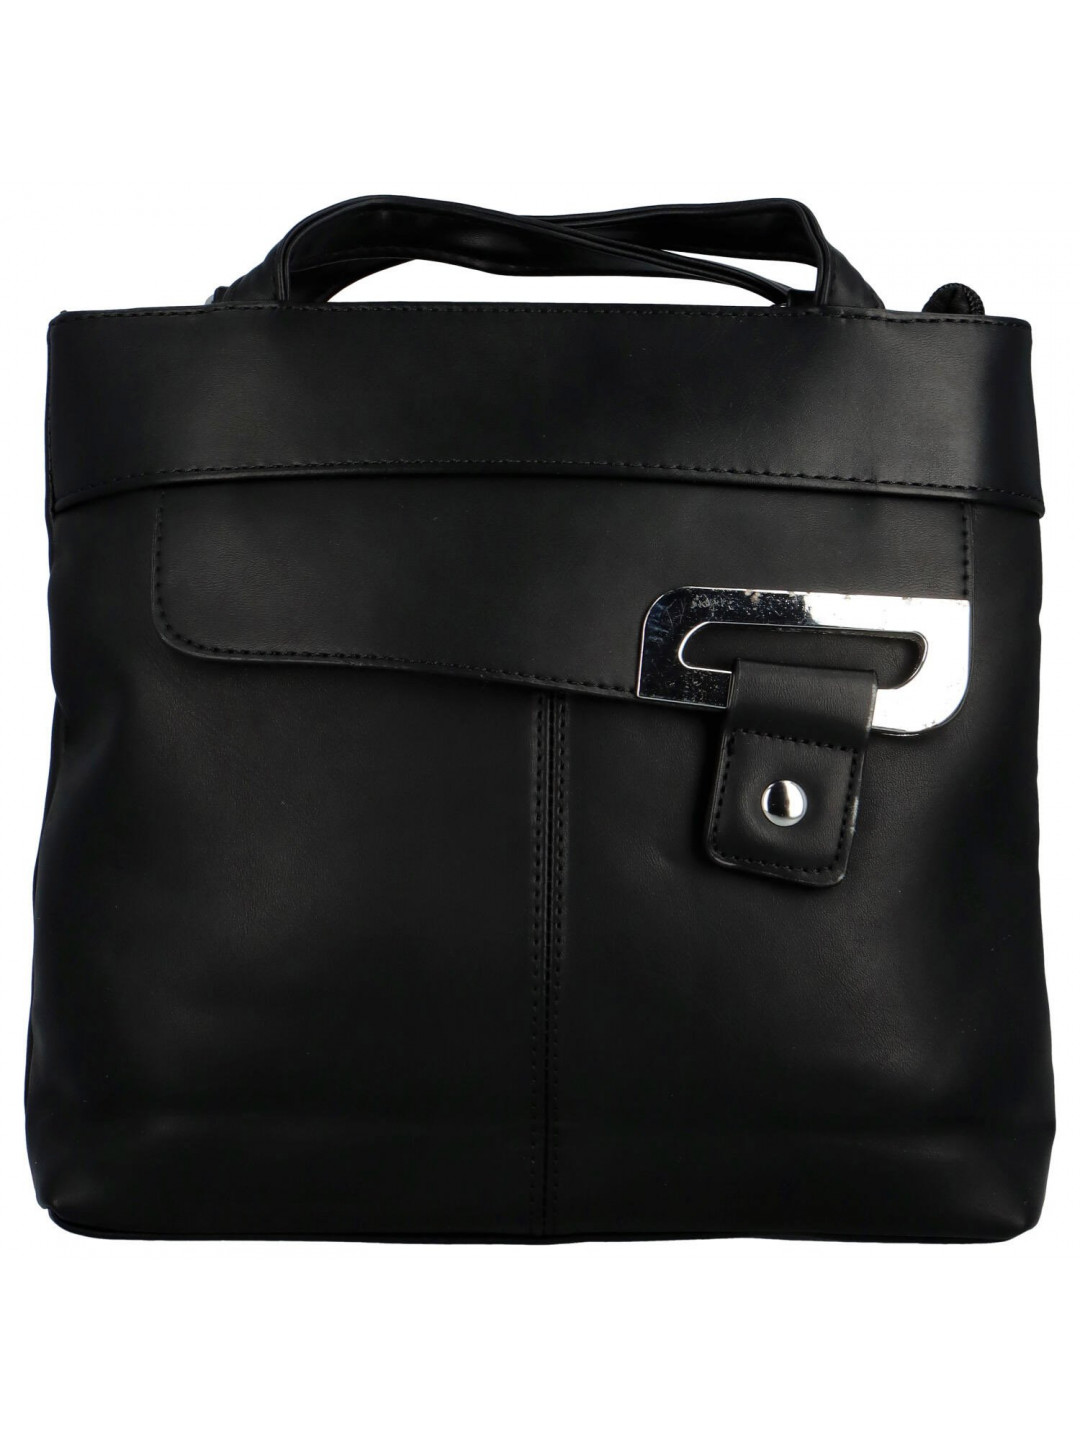 Trendy dámský koženkový kabelko-batůžek Eleana černá